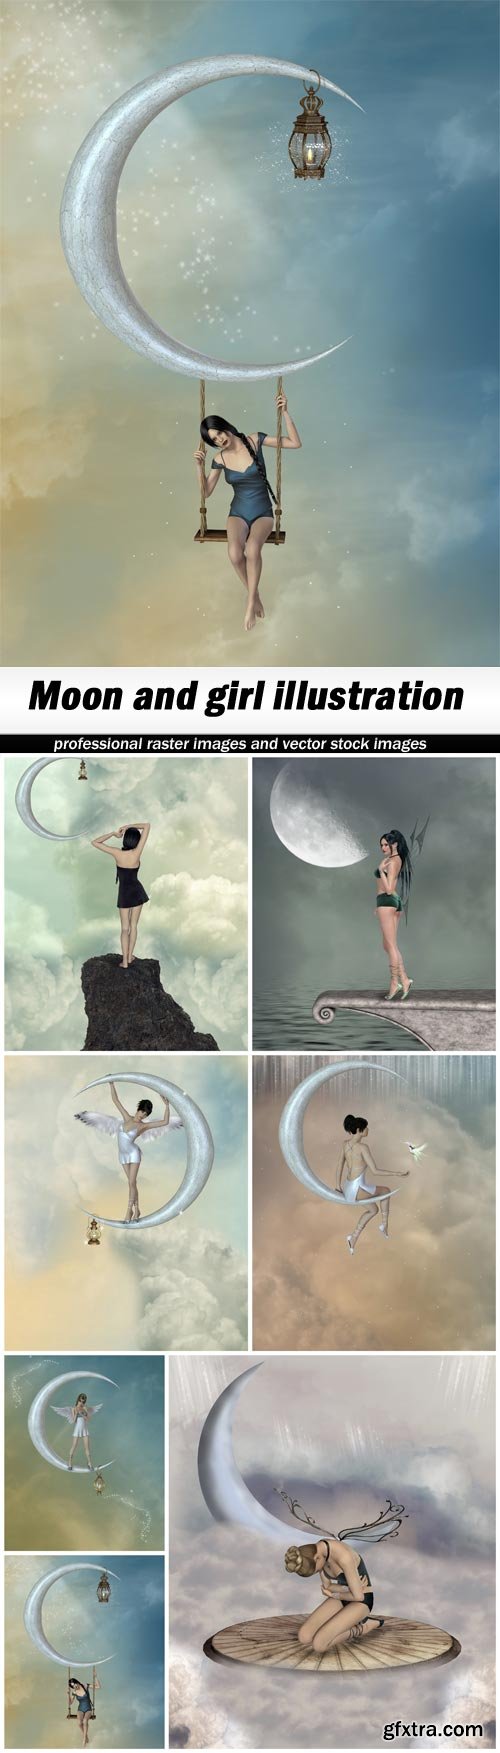 Moon and girl illustration - 7 UHQ JPEG